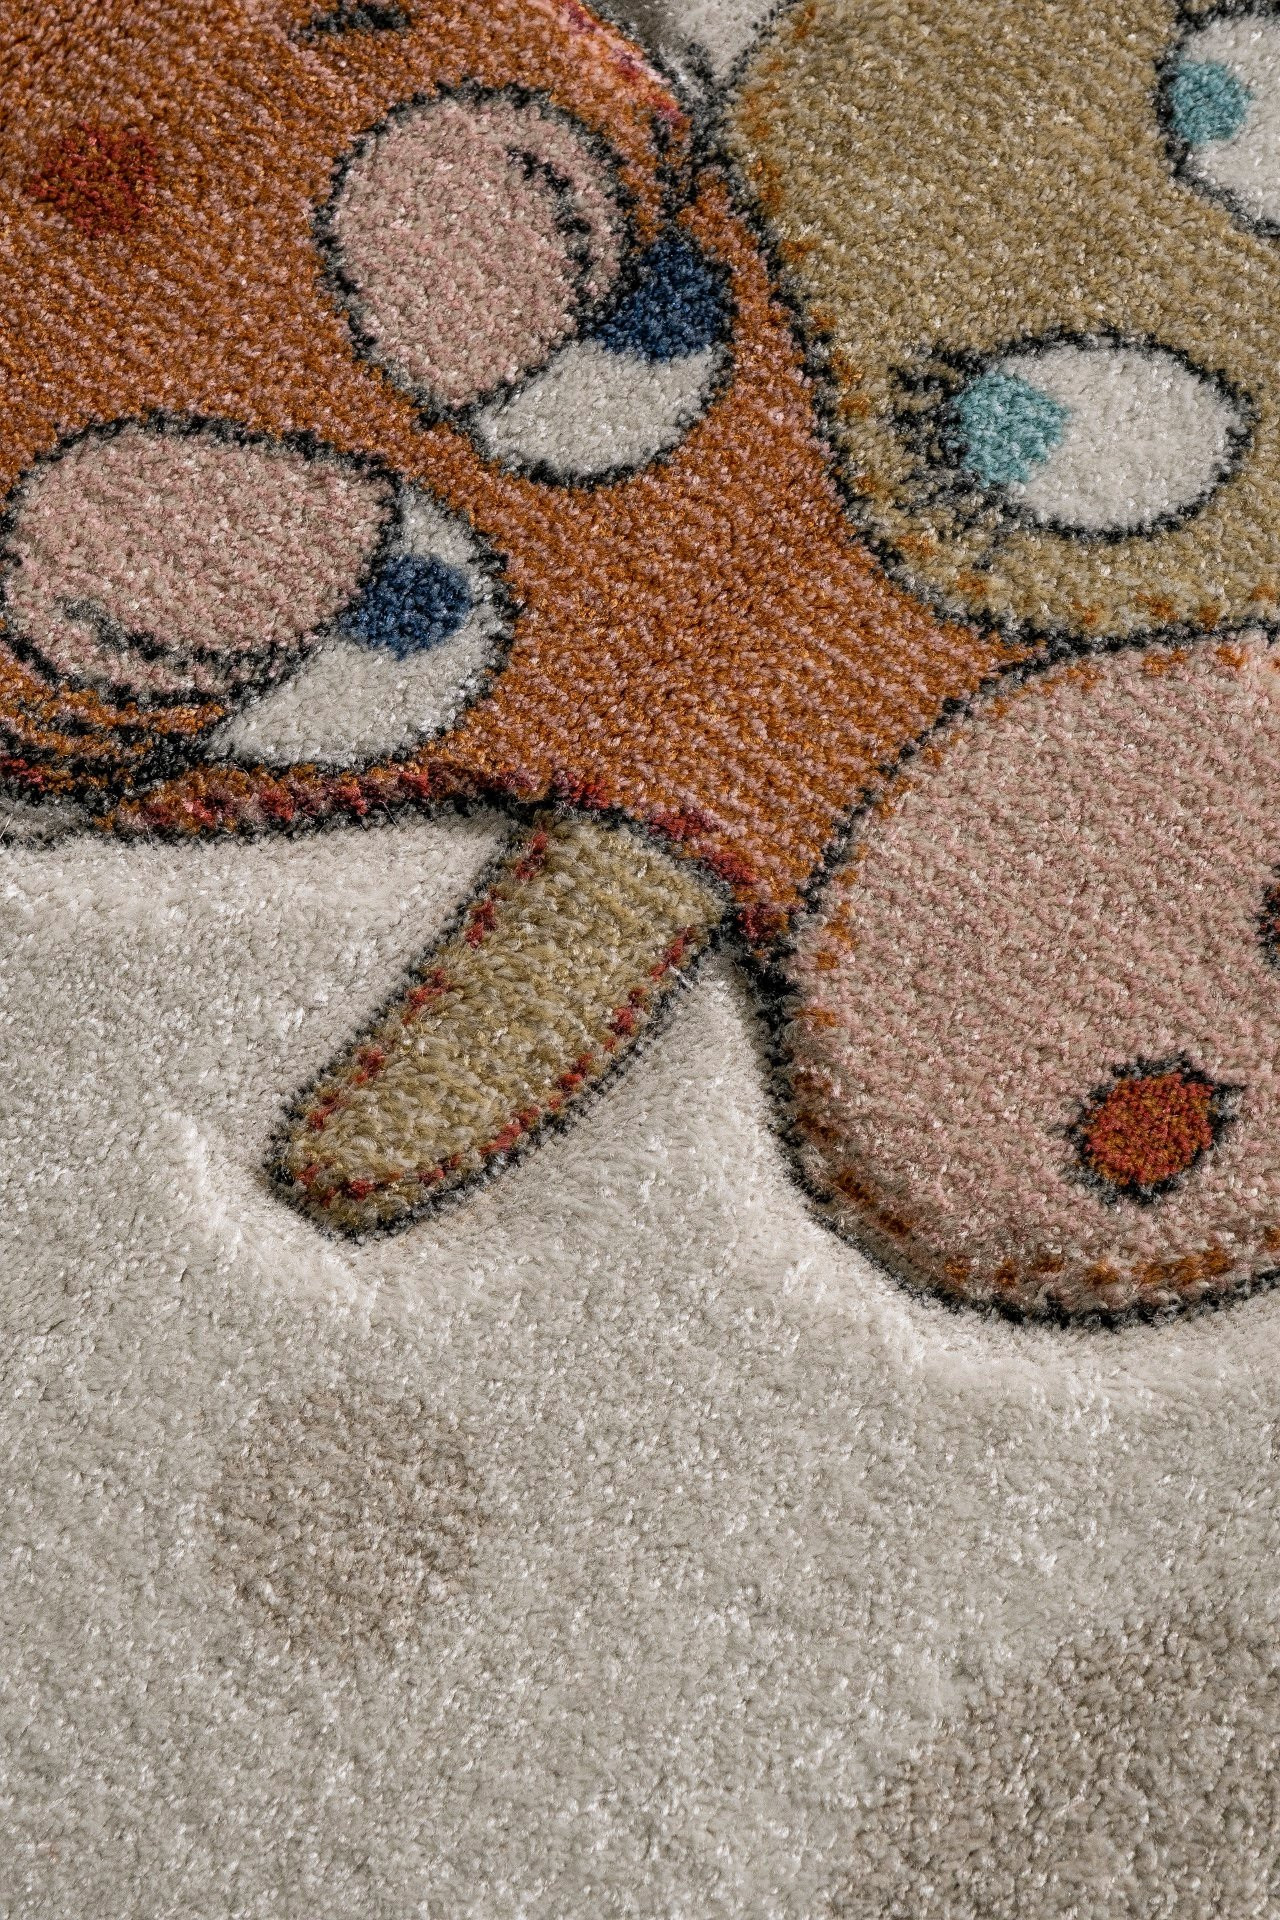 Detský koberec FUNNY GIRAFFE 2